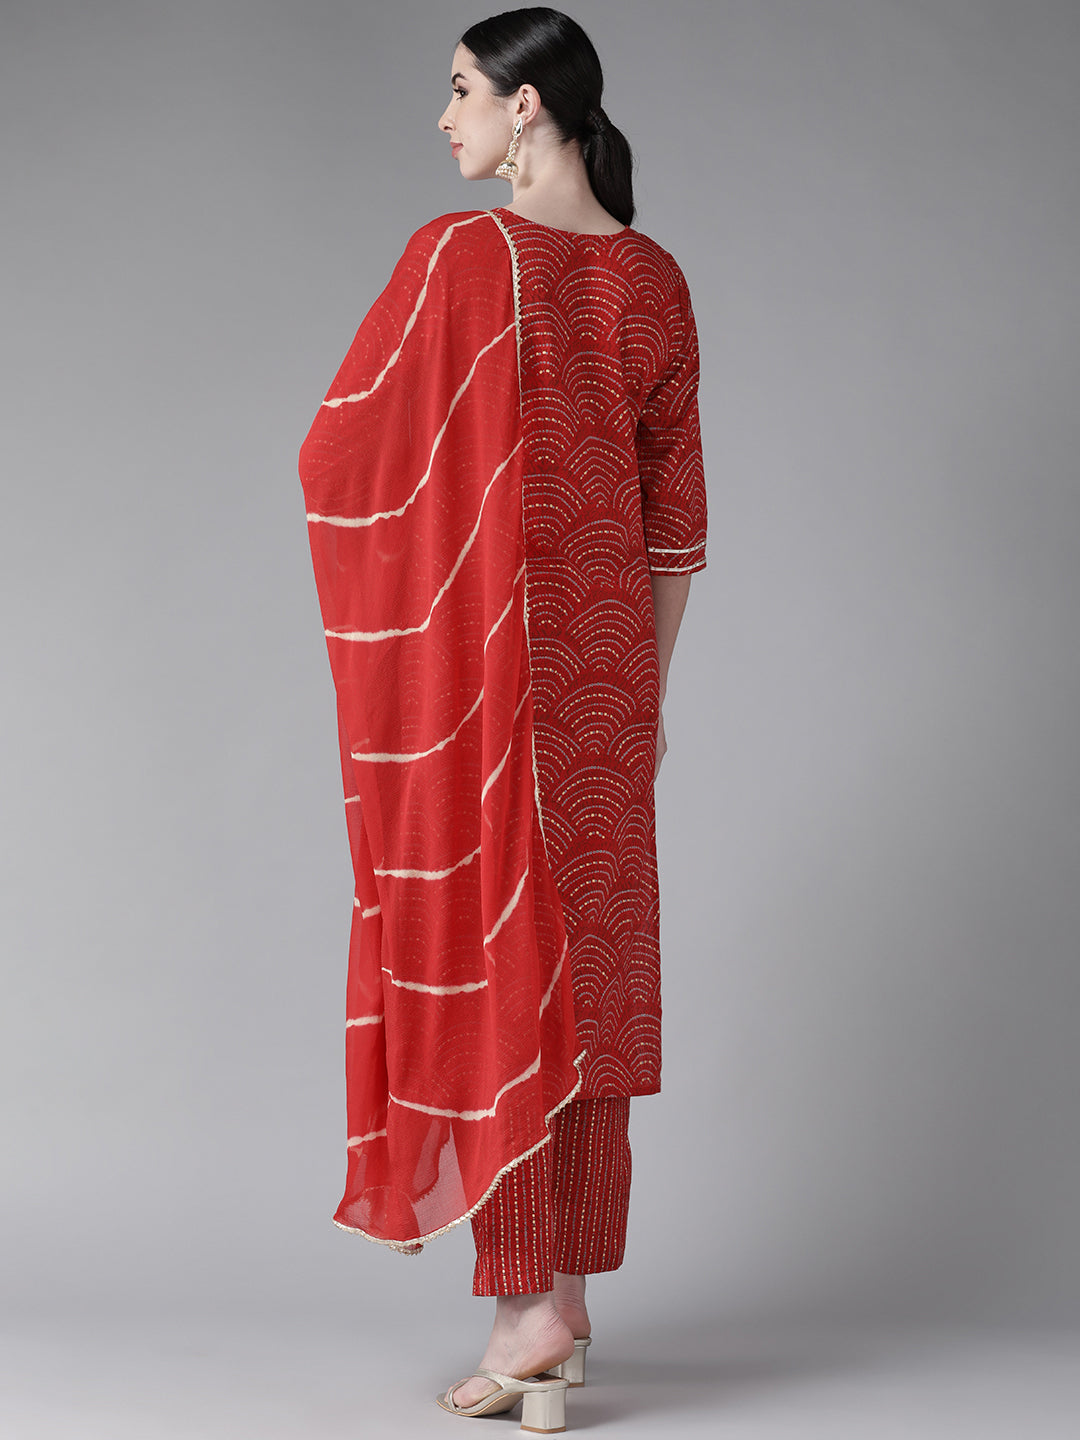 Women's Cotton Blend Red Embroidered A-Line Kurta Trouser Dupatta Set - Navyaa